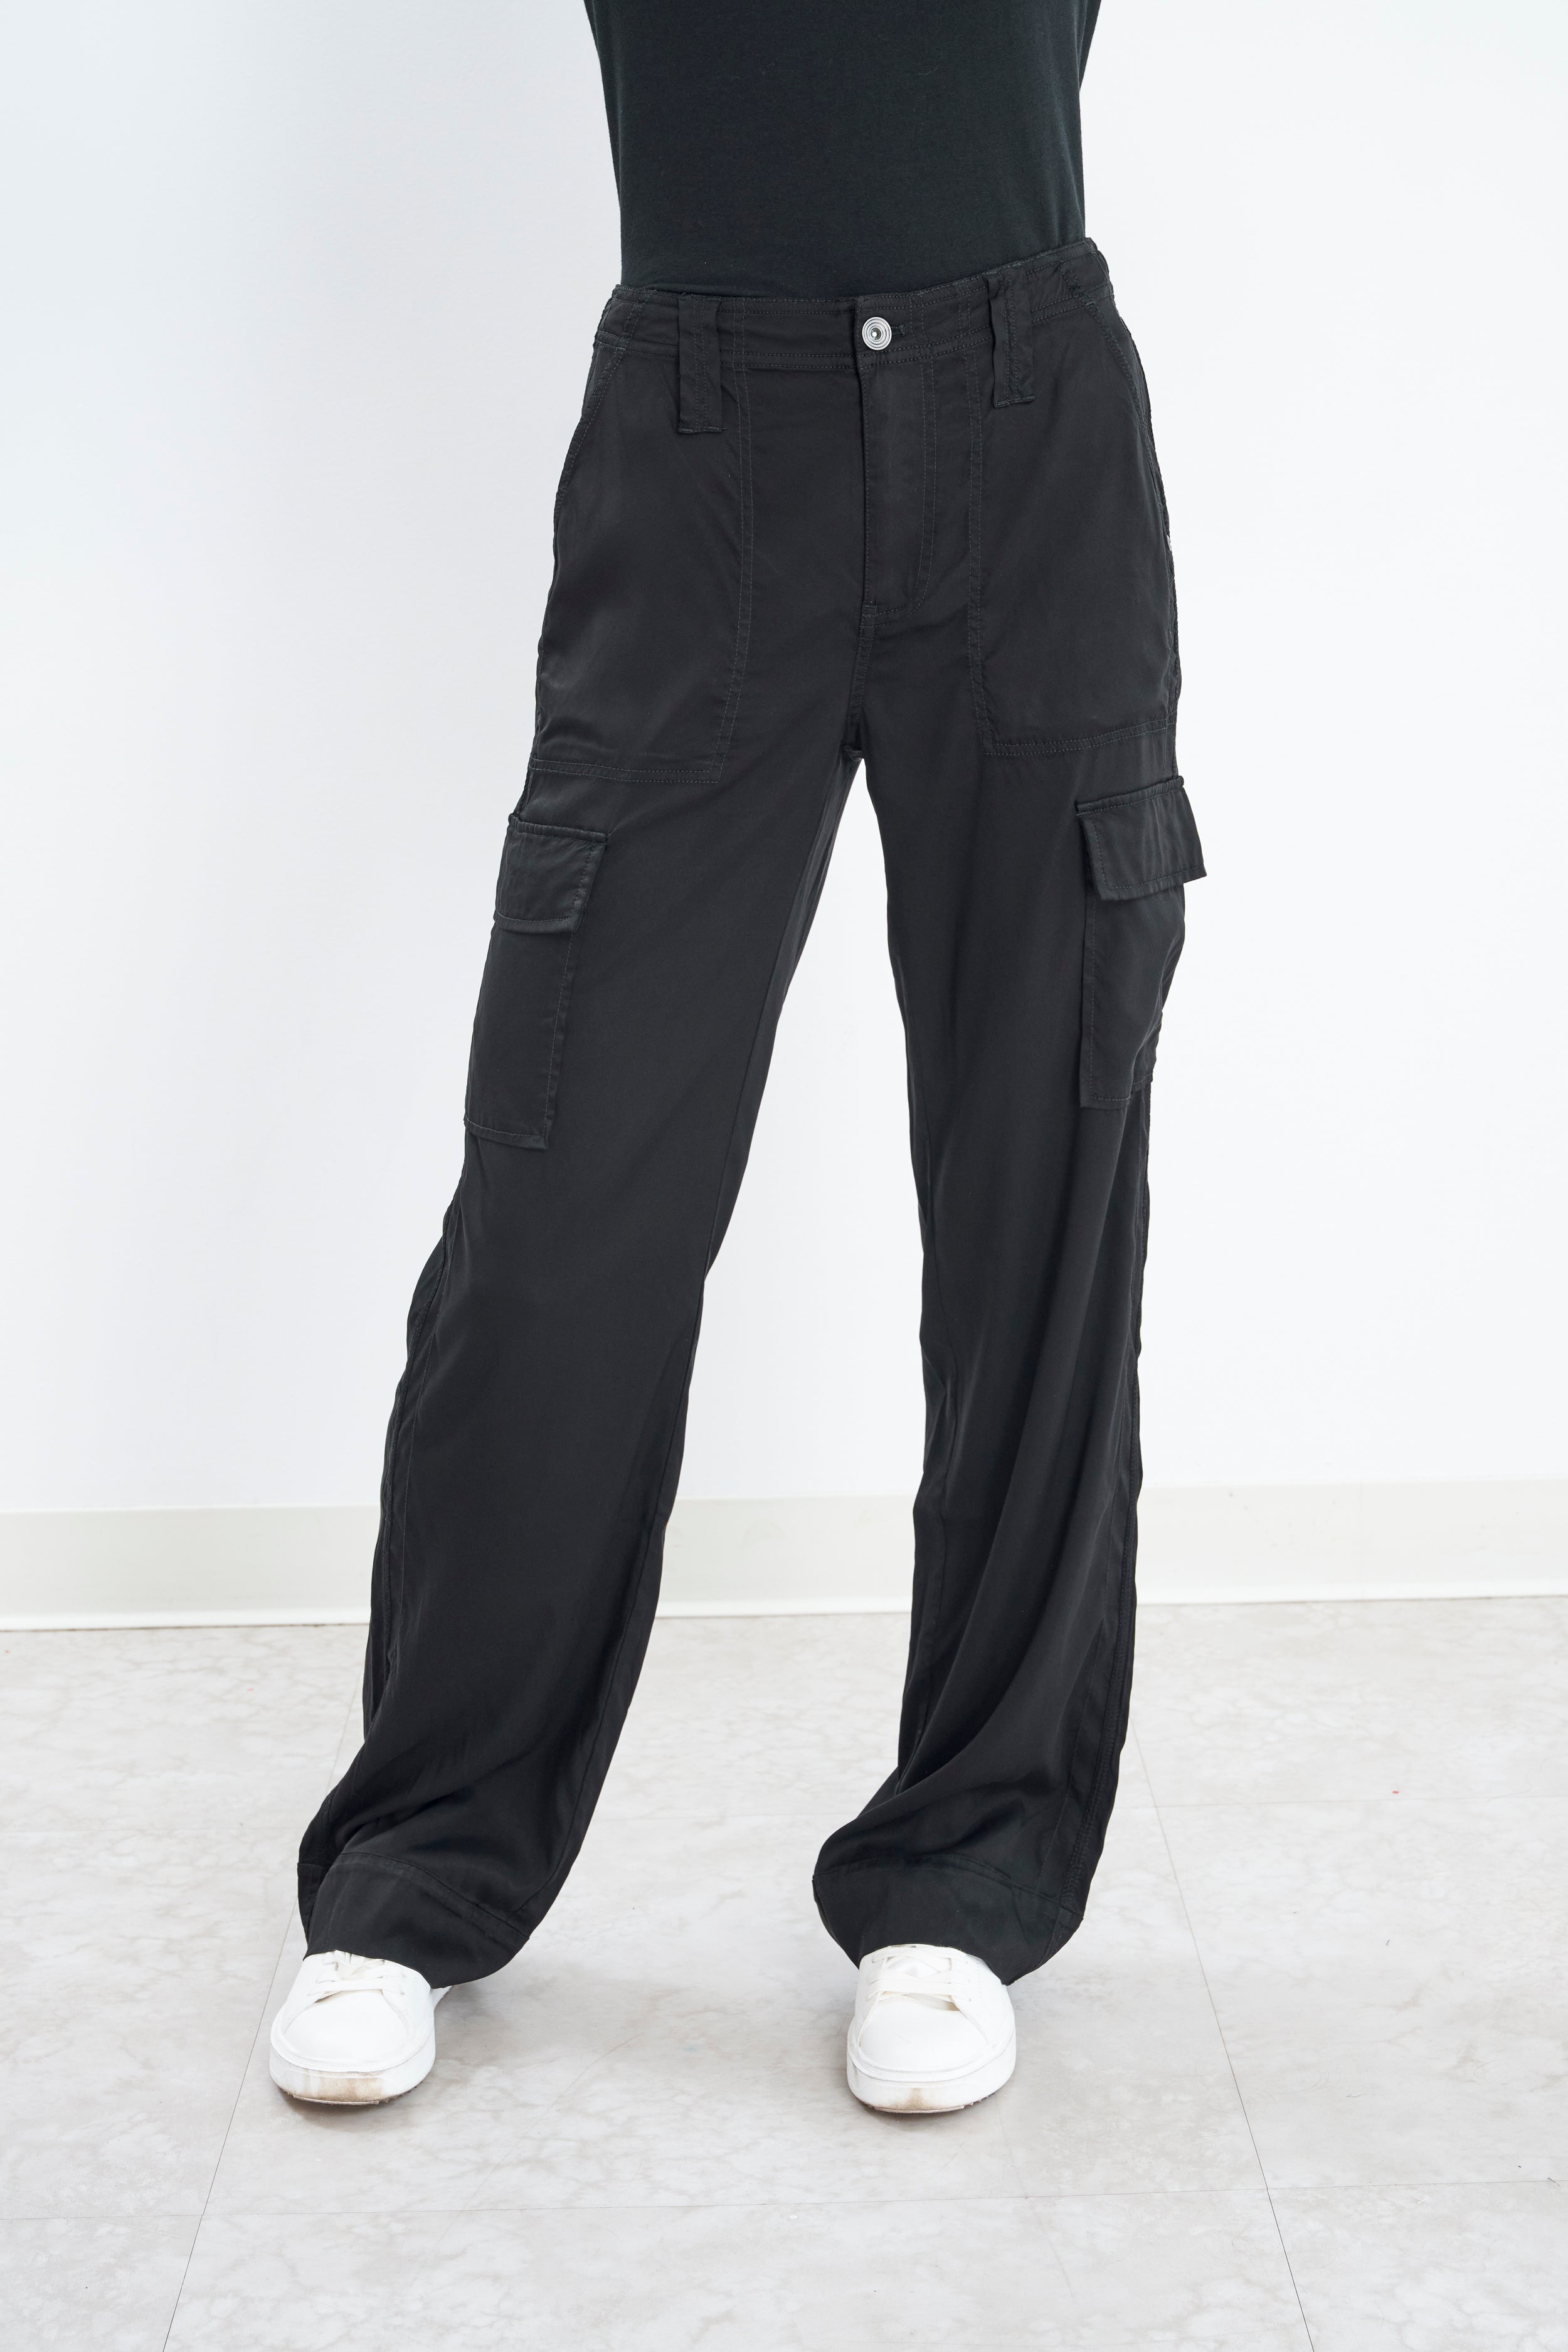 Buy Soho Apparel Girls Seamless Lady Capri Legging SG-27-Navy Nylon Spandex  Online at desertcartKUWAIT